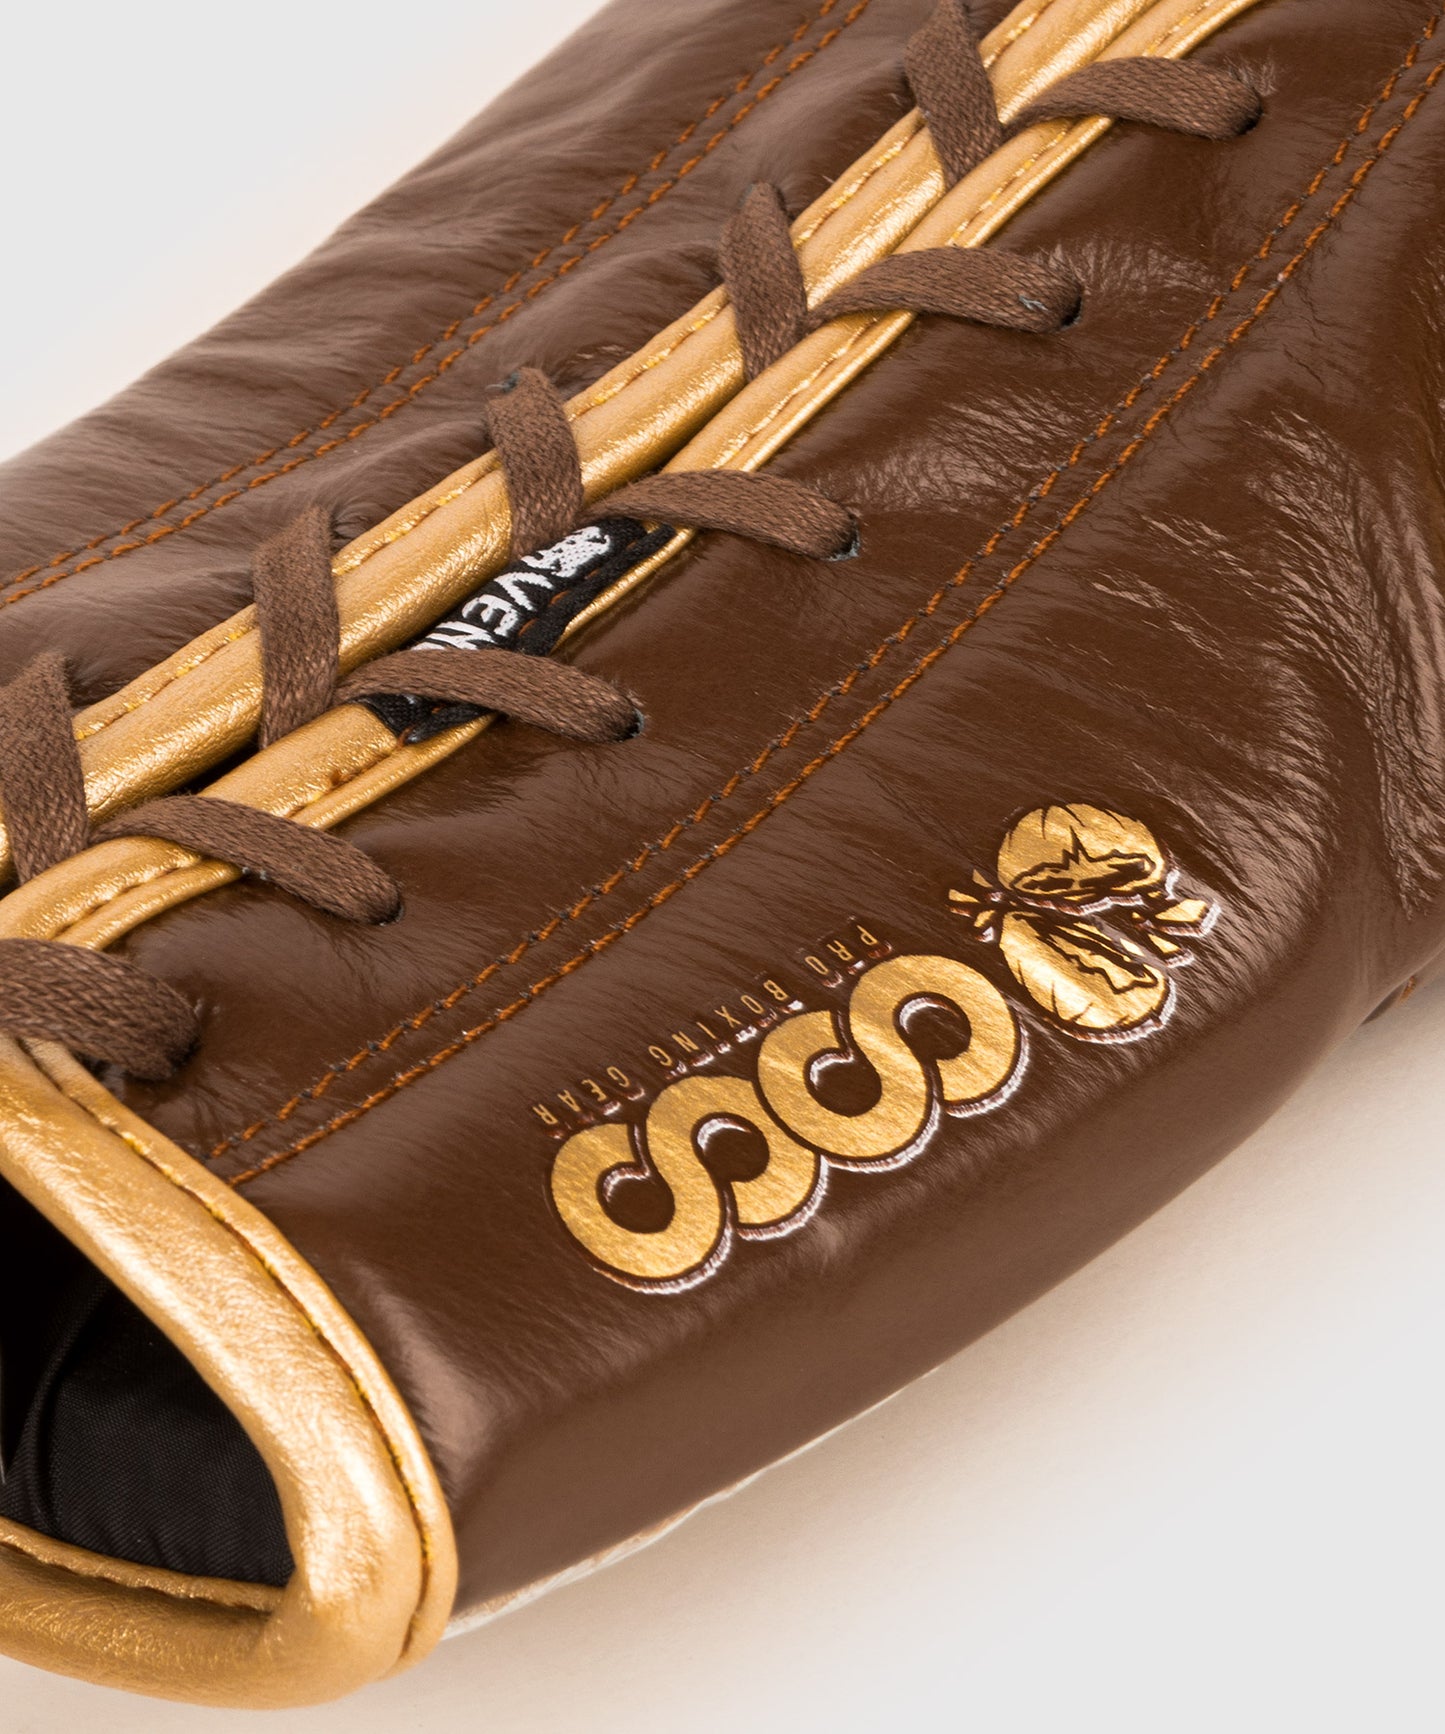 Gants de Boxe Pro avec Lacets Venum Coco Monogram - Marron Grizzly